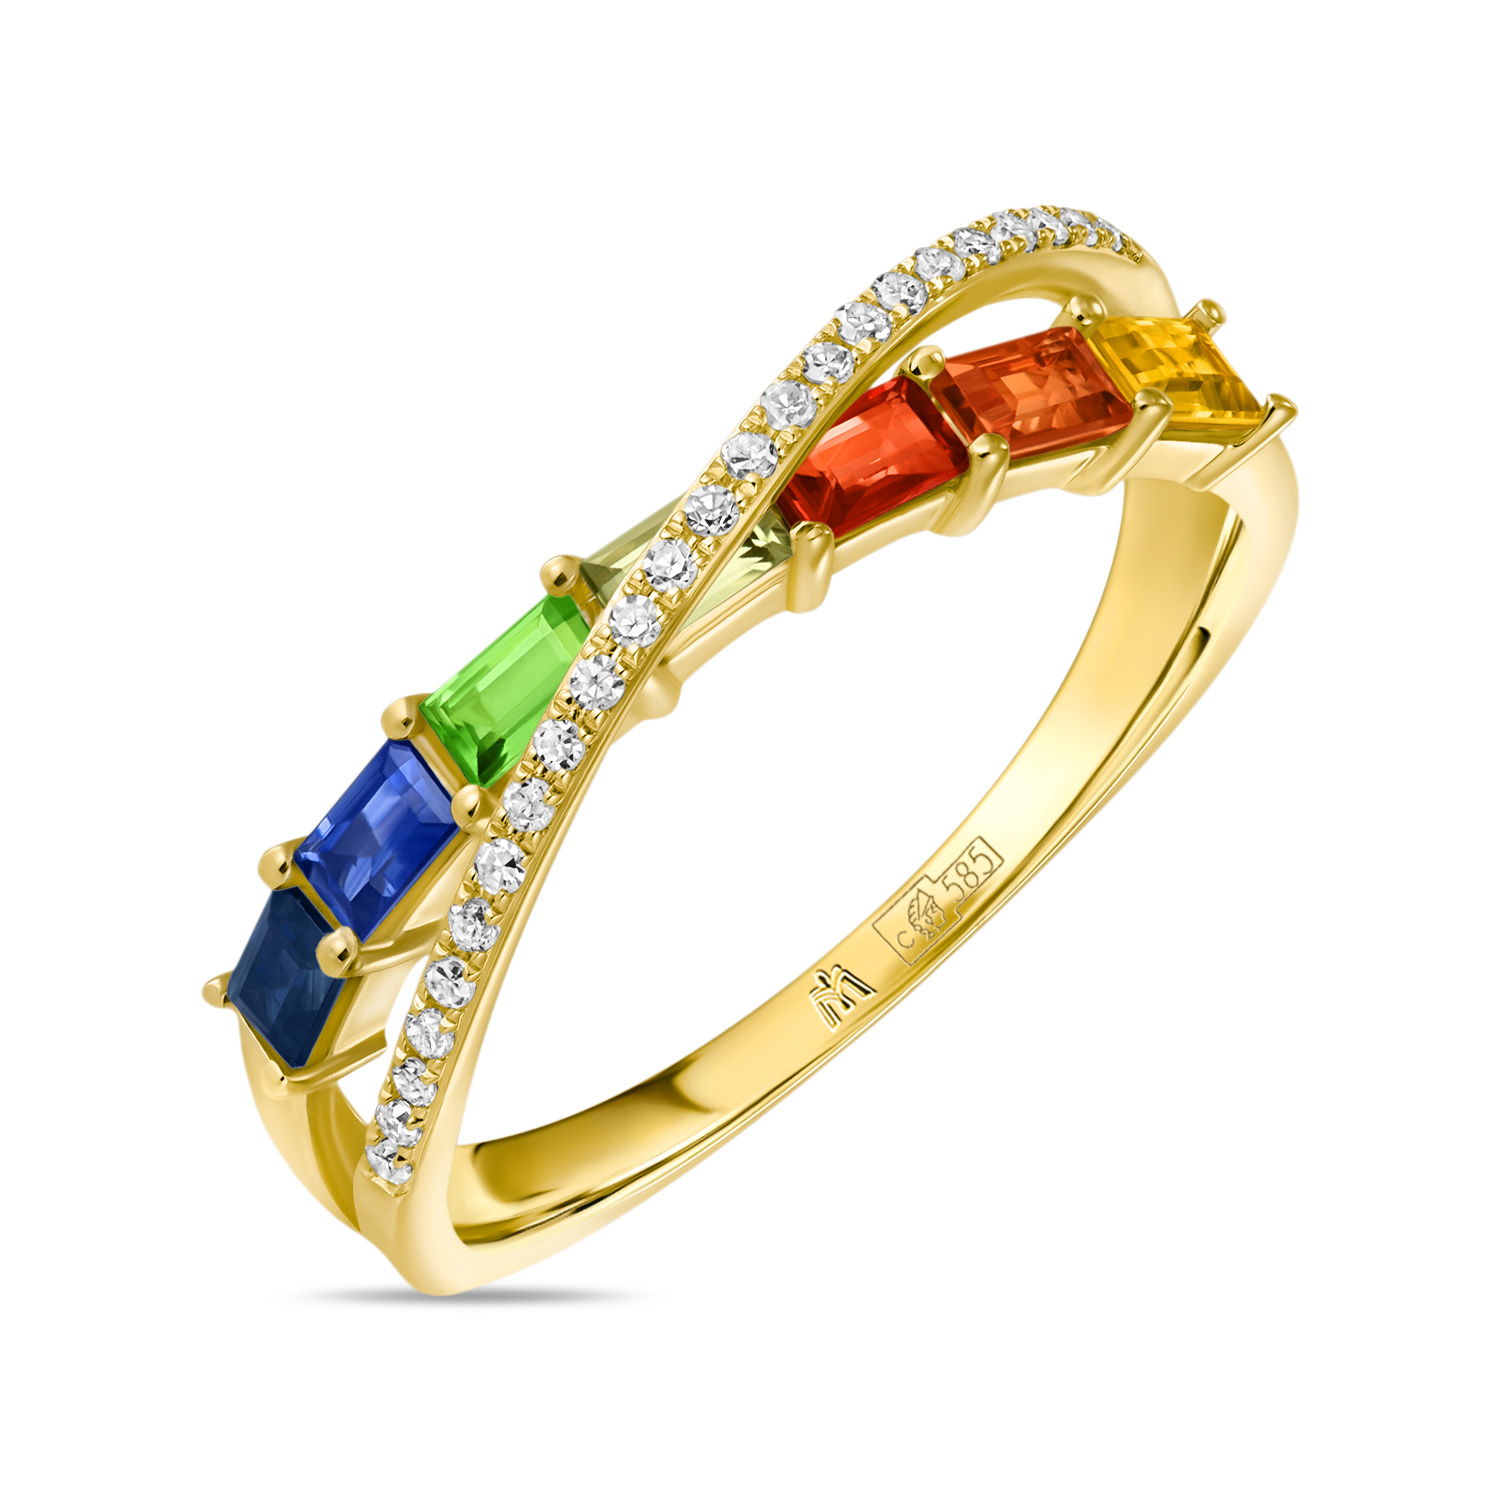 Кольца МЮЗ Кольцо с бриллиантами, гранатом, сапфирами и цветными сапфирами miuz ru кольцо c бриллиантами и цветными сапфирами